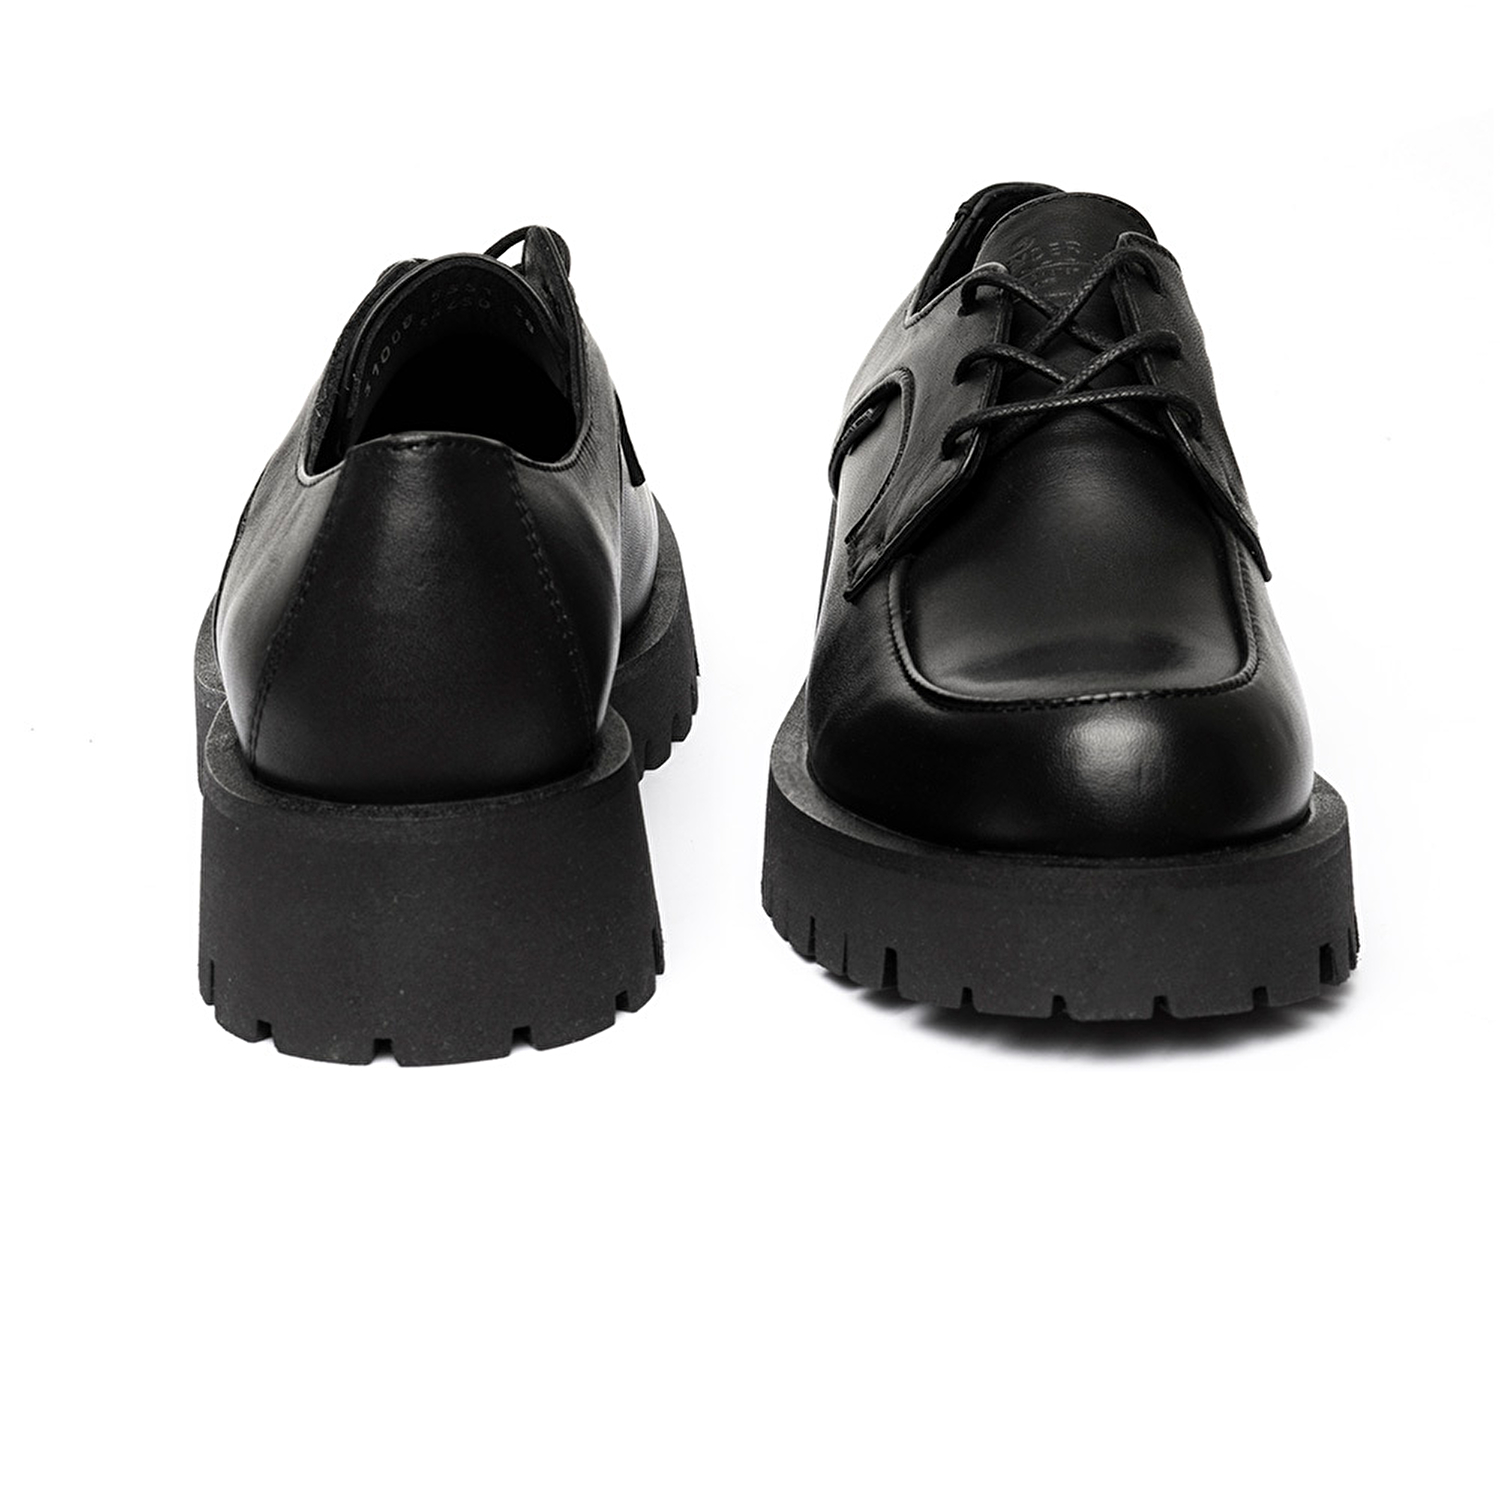 Kadın Siyah Hakiki Deri Oxford Ayakkabı 3K2KA31008-6